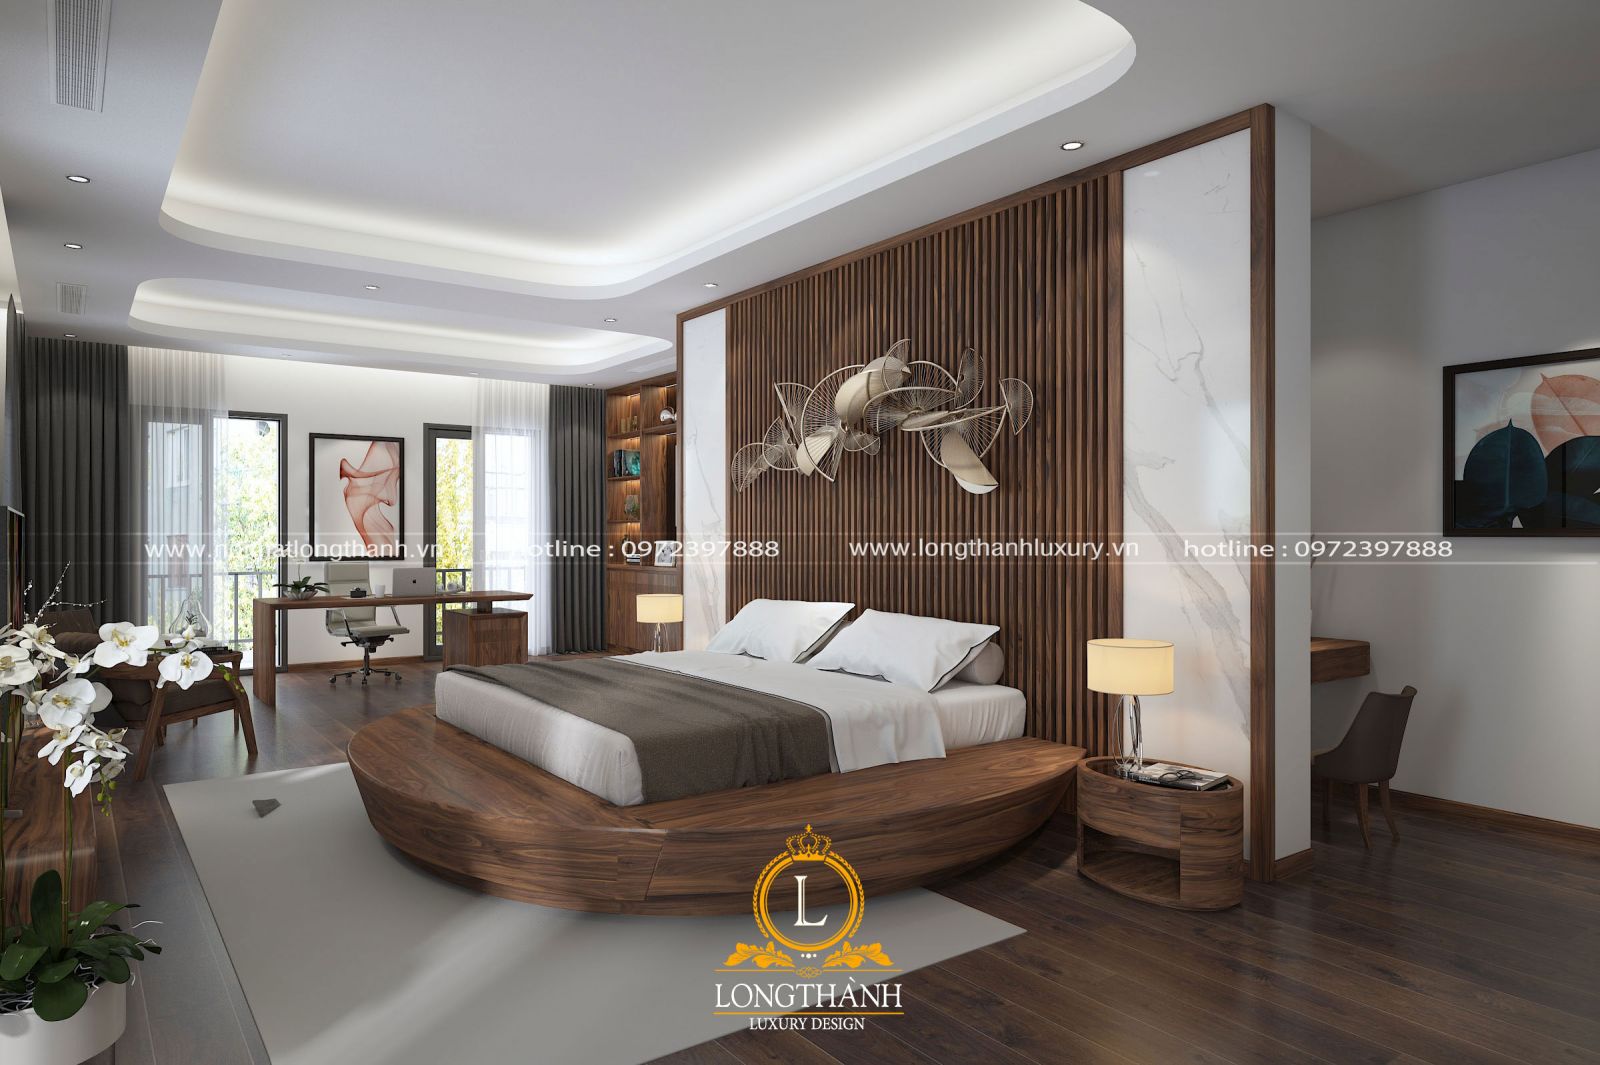 Phòng ngủ hiện đại cao cấp đẹp được thiết kế theo nhu cầu chủ nhân